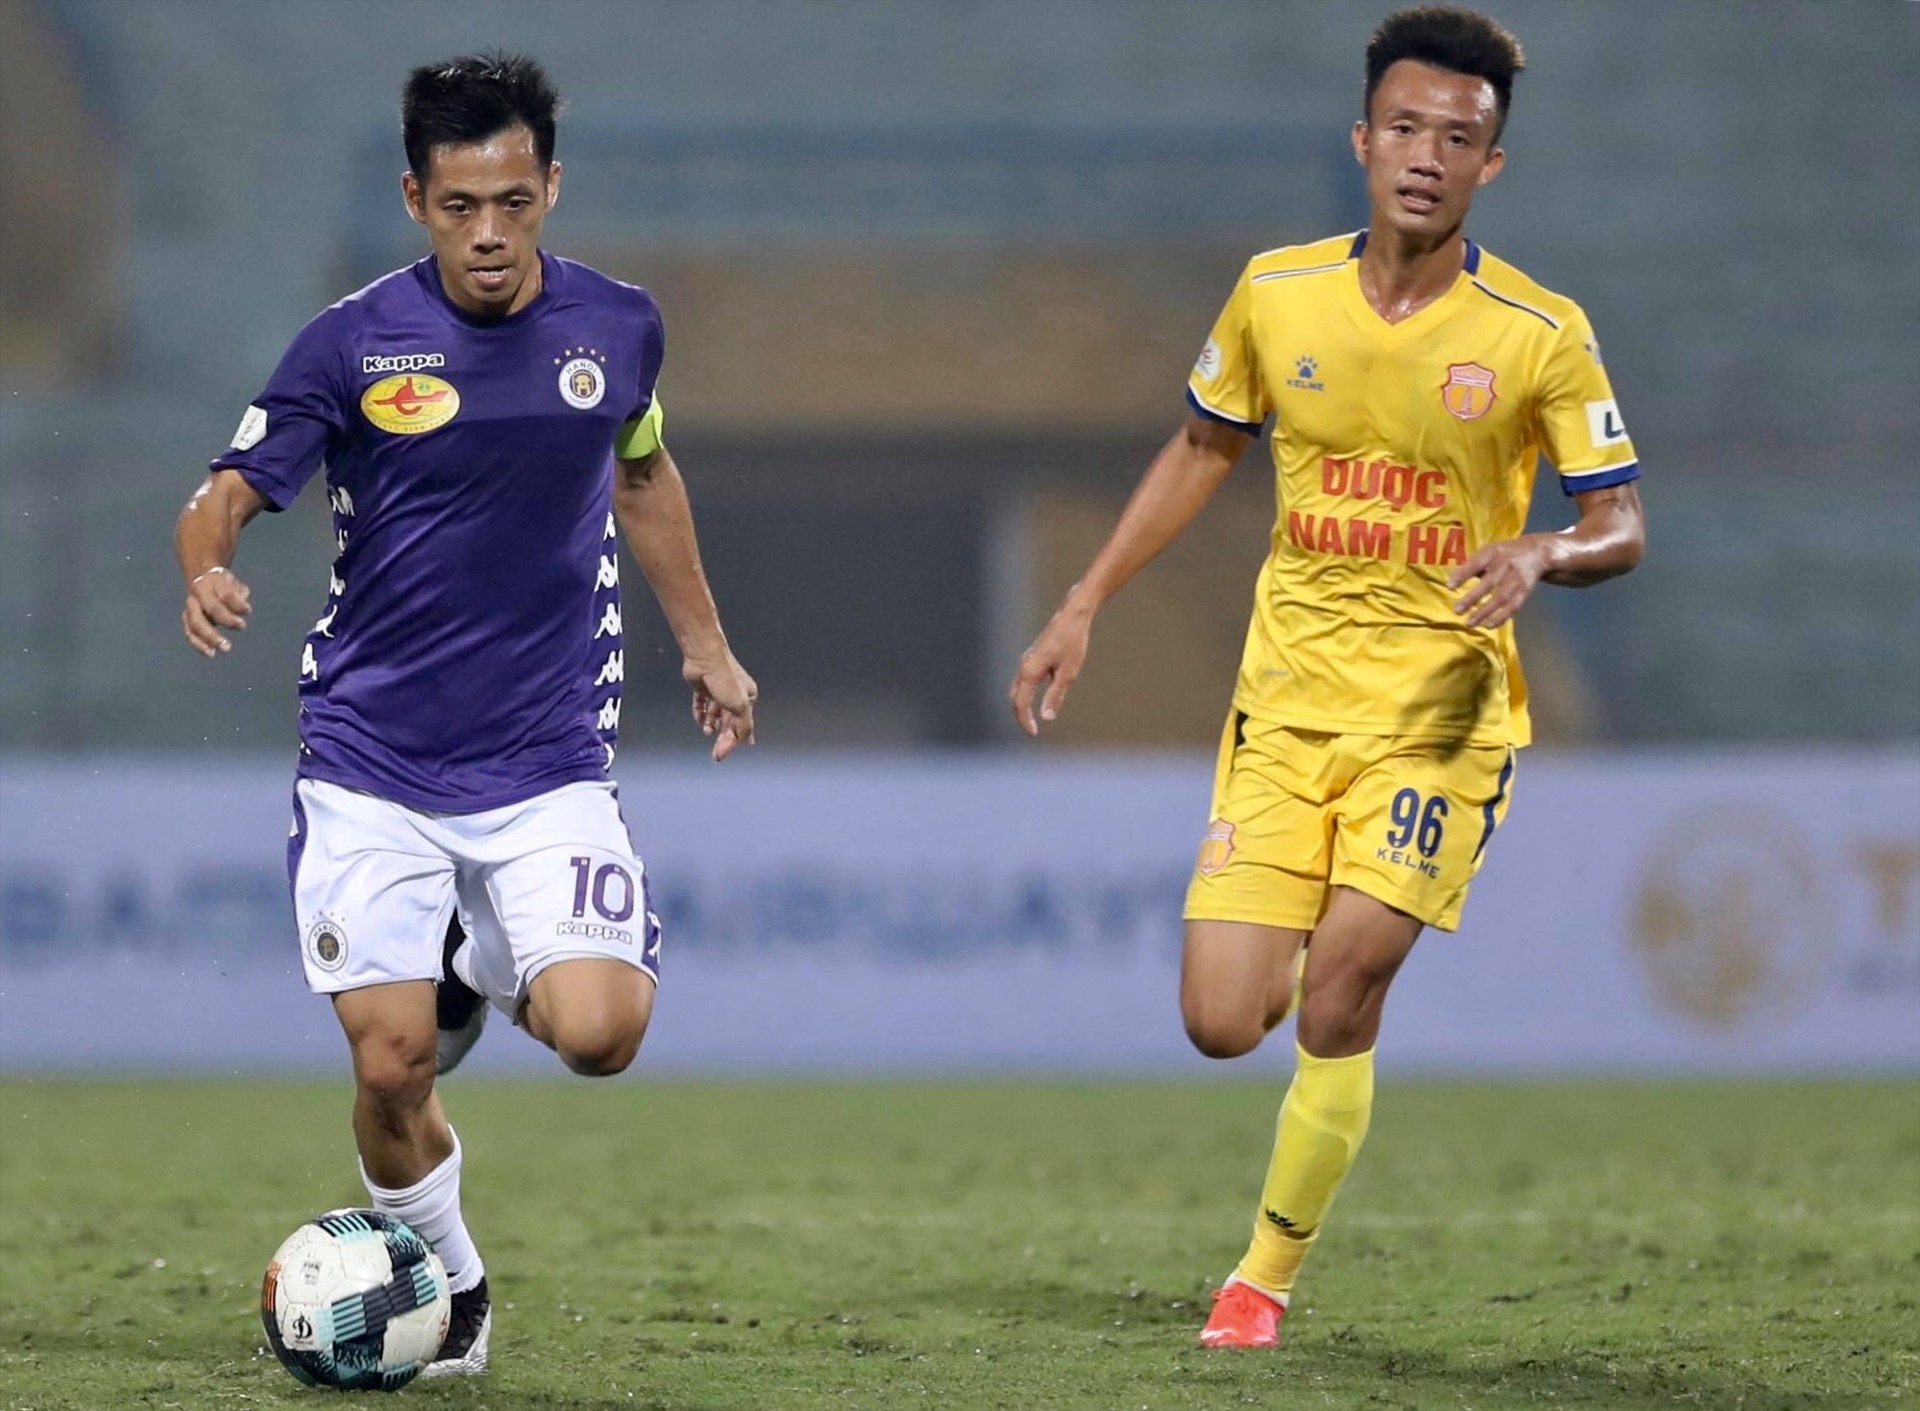 Trận đấu giữa Hà Nội và Nam Định ở vòng 1 LS V.League 2020 diễn ra trên sân Hàng Đẫy kém đi phần hấp dẫn khi vắng “cầu thủ số 12“.